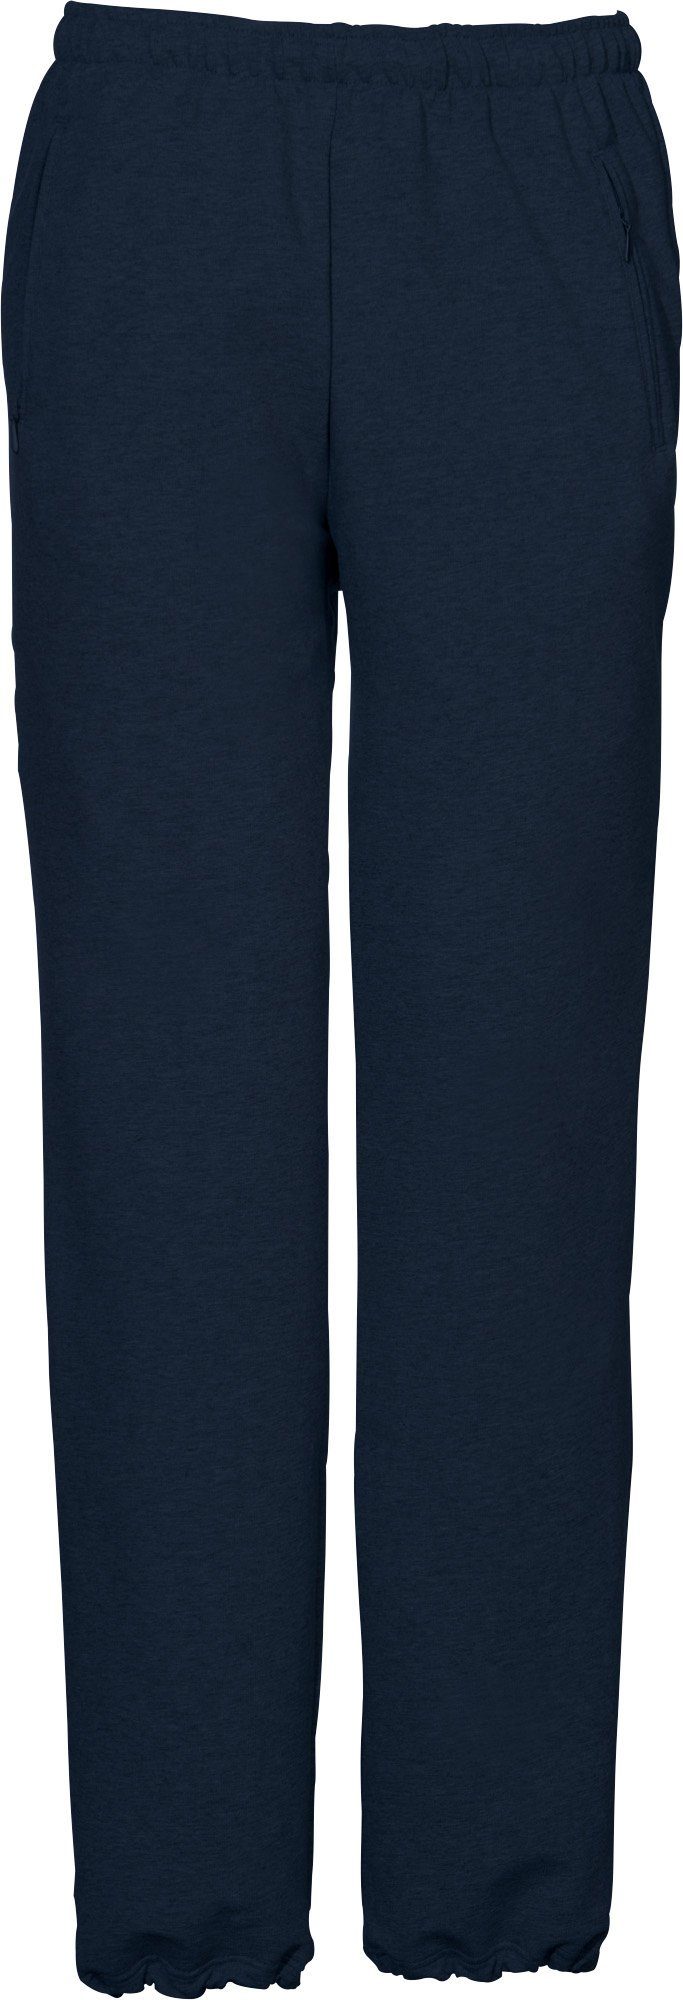 SCHNEIDER Sportswear Jogginghose "HORGENM", Herren-Freizeithose dunkelblau lang Uni